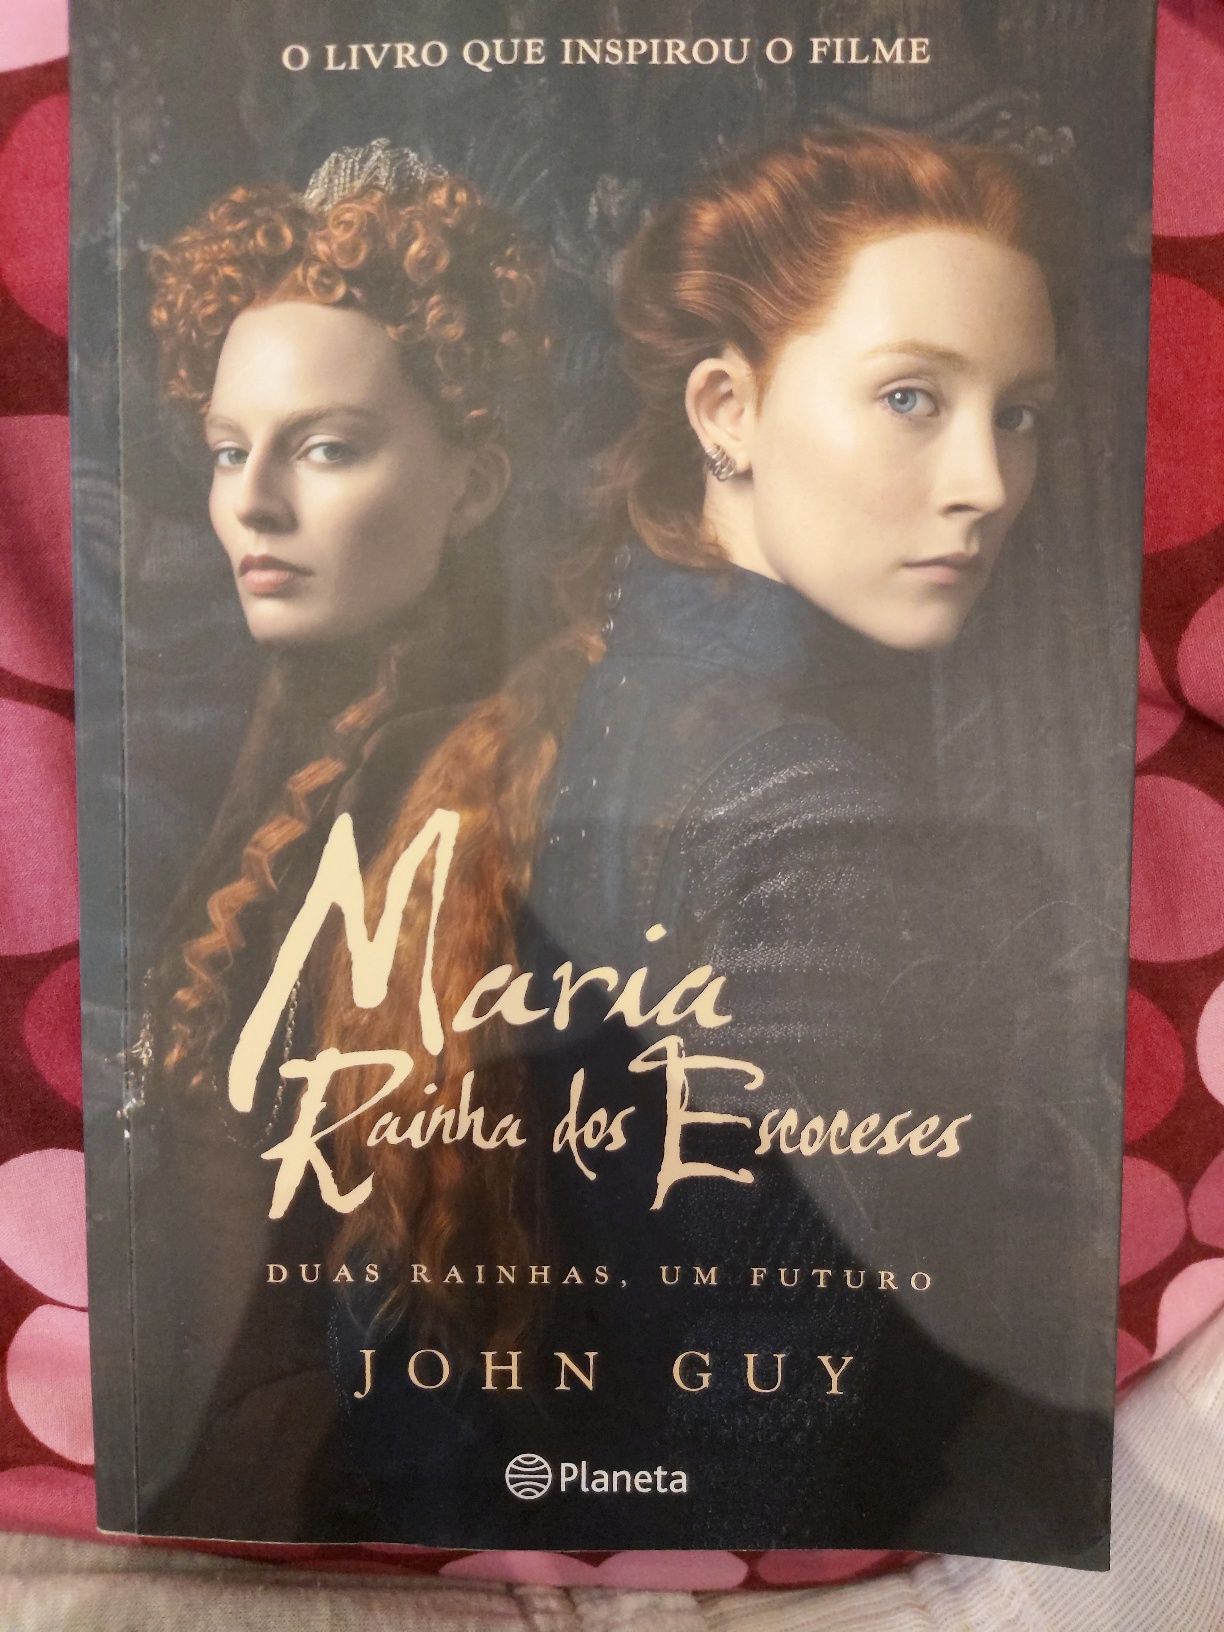 Livro "Maria rainha dos escoceses" de John Guy